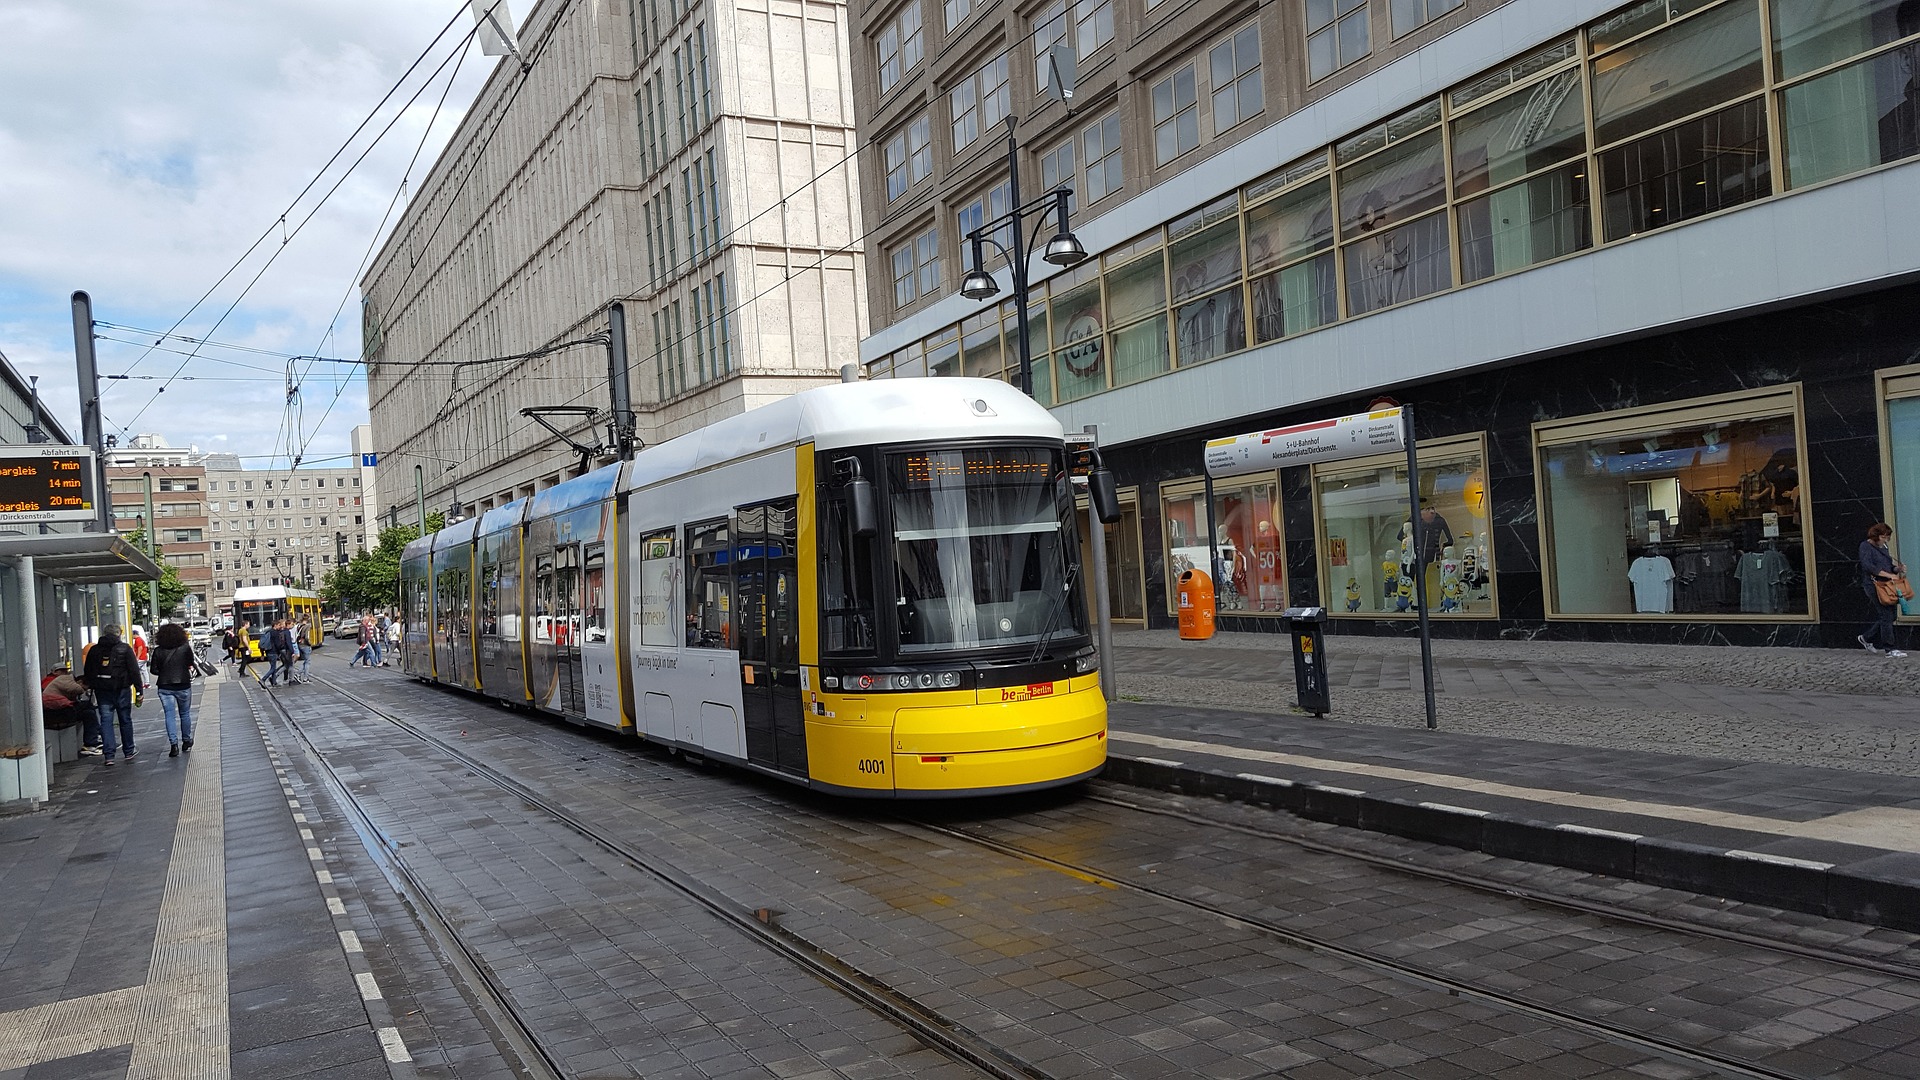 Tram in Alexanderplatz, Berlin, Germany